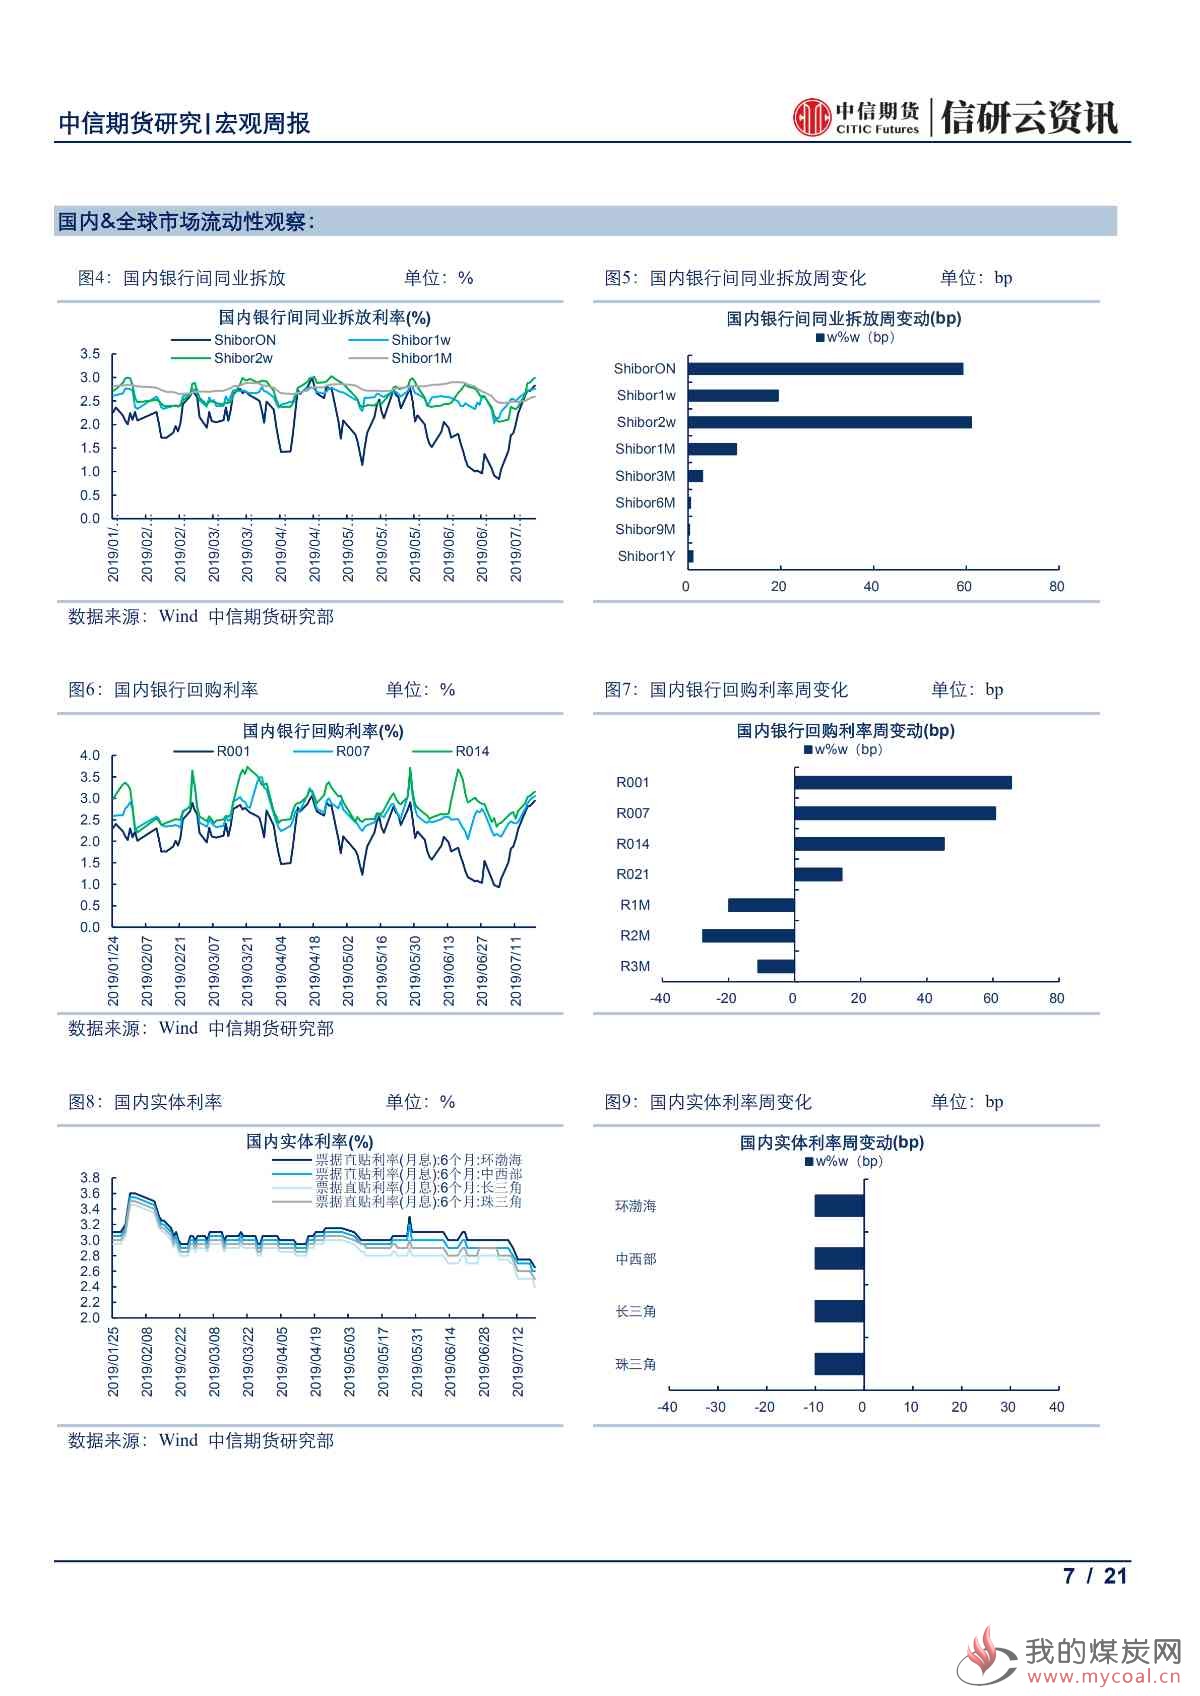 【中信期货宏观】中国上半年经济结构持续改善 欧美央行鸽派倾向愈发明显——周报20190722_06